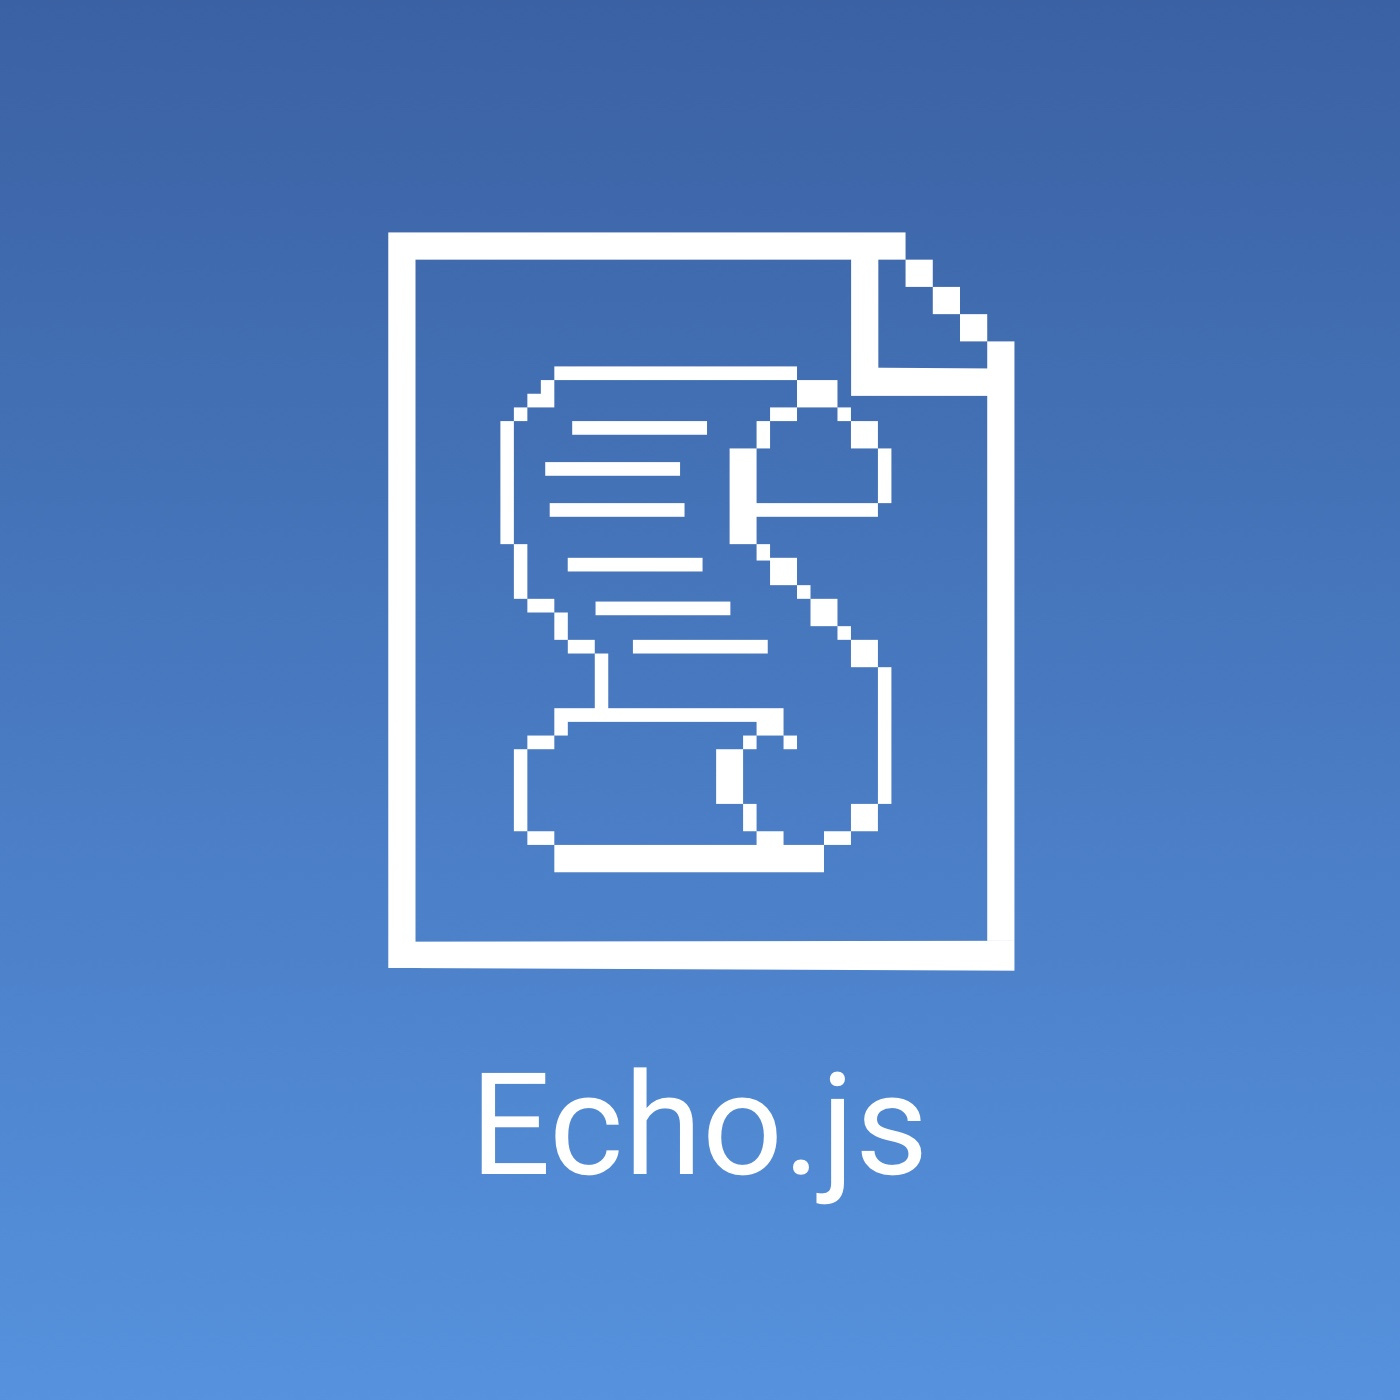 Echo.js 编程回响